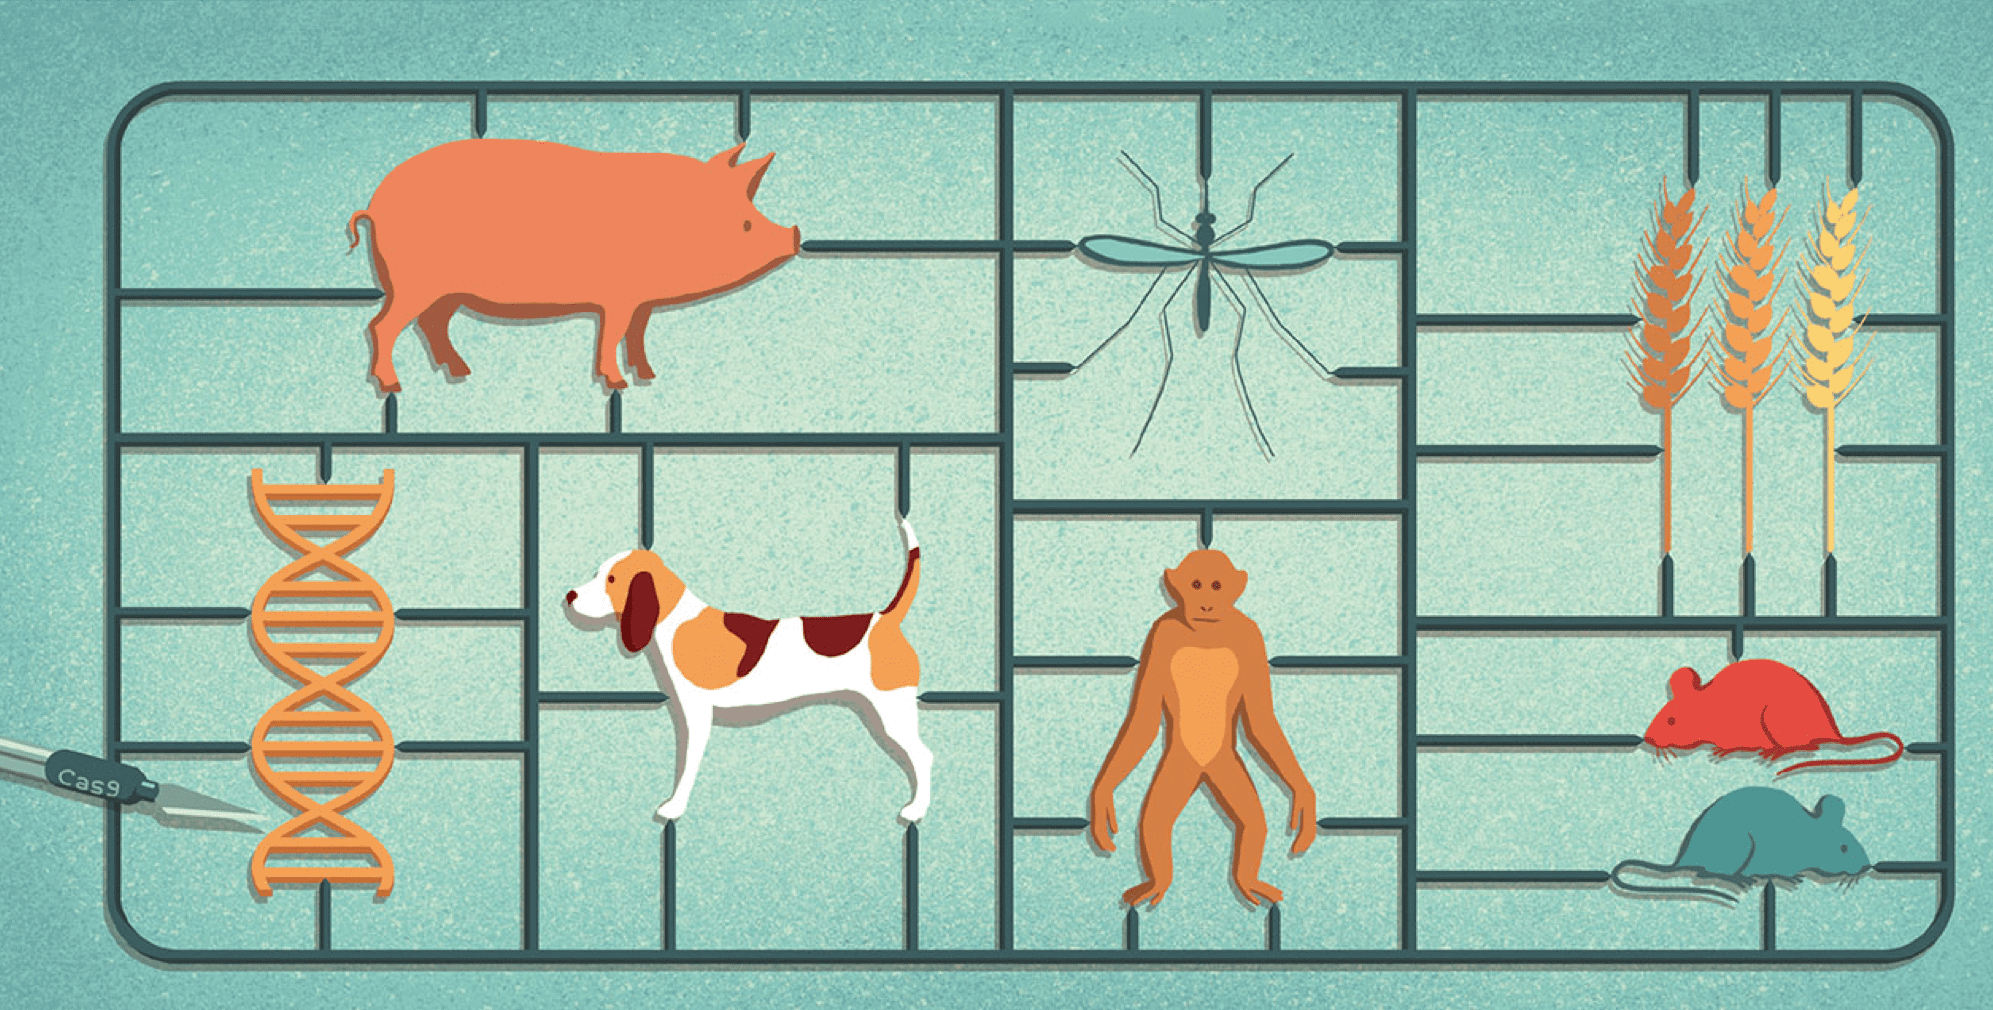 Representación de dibujos animados de la función Cas9 con ADN con diferentes animales